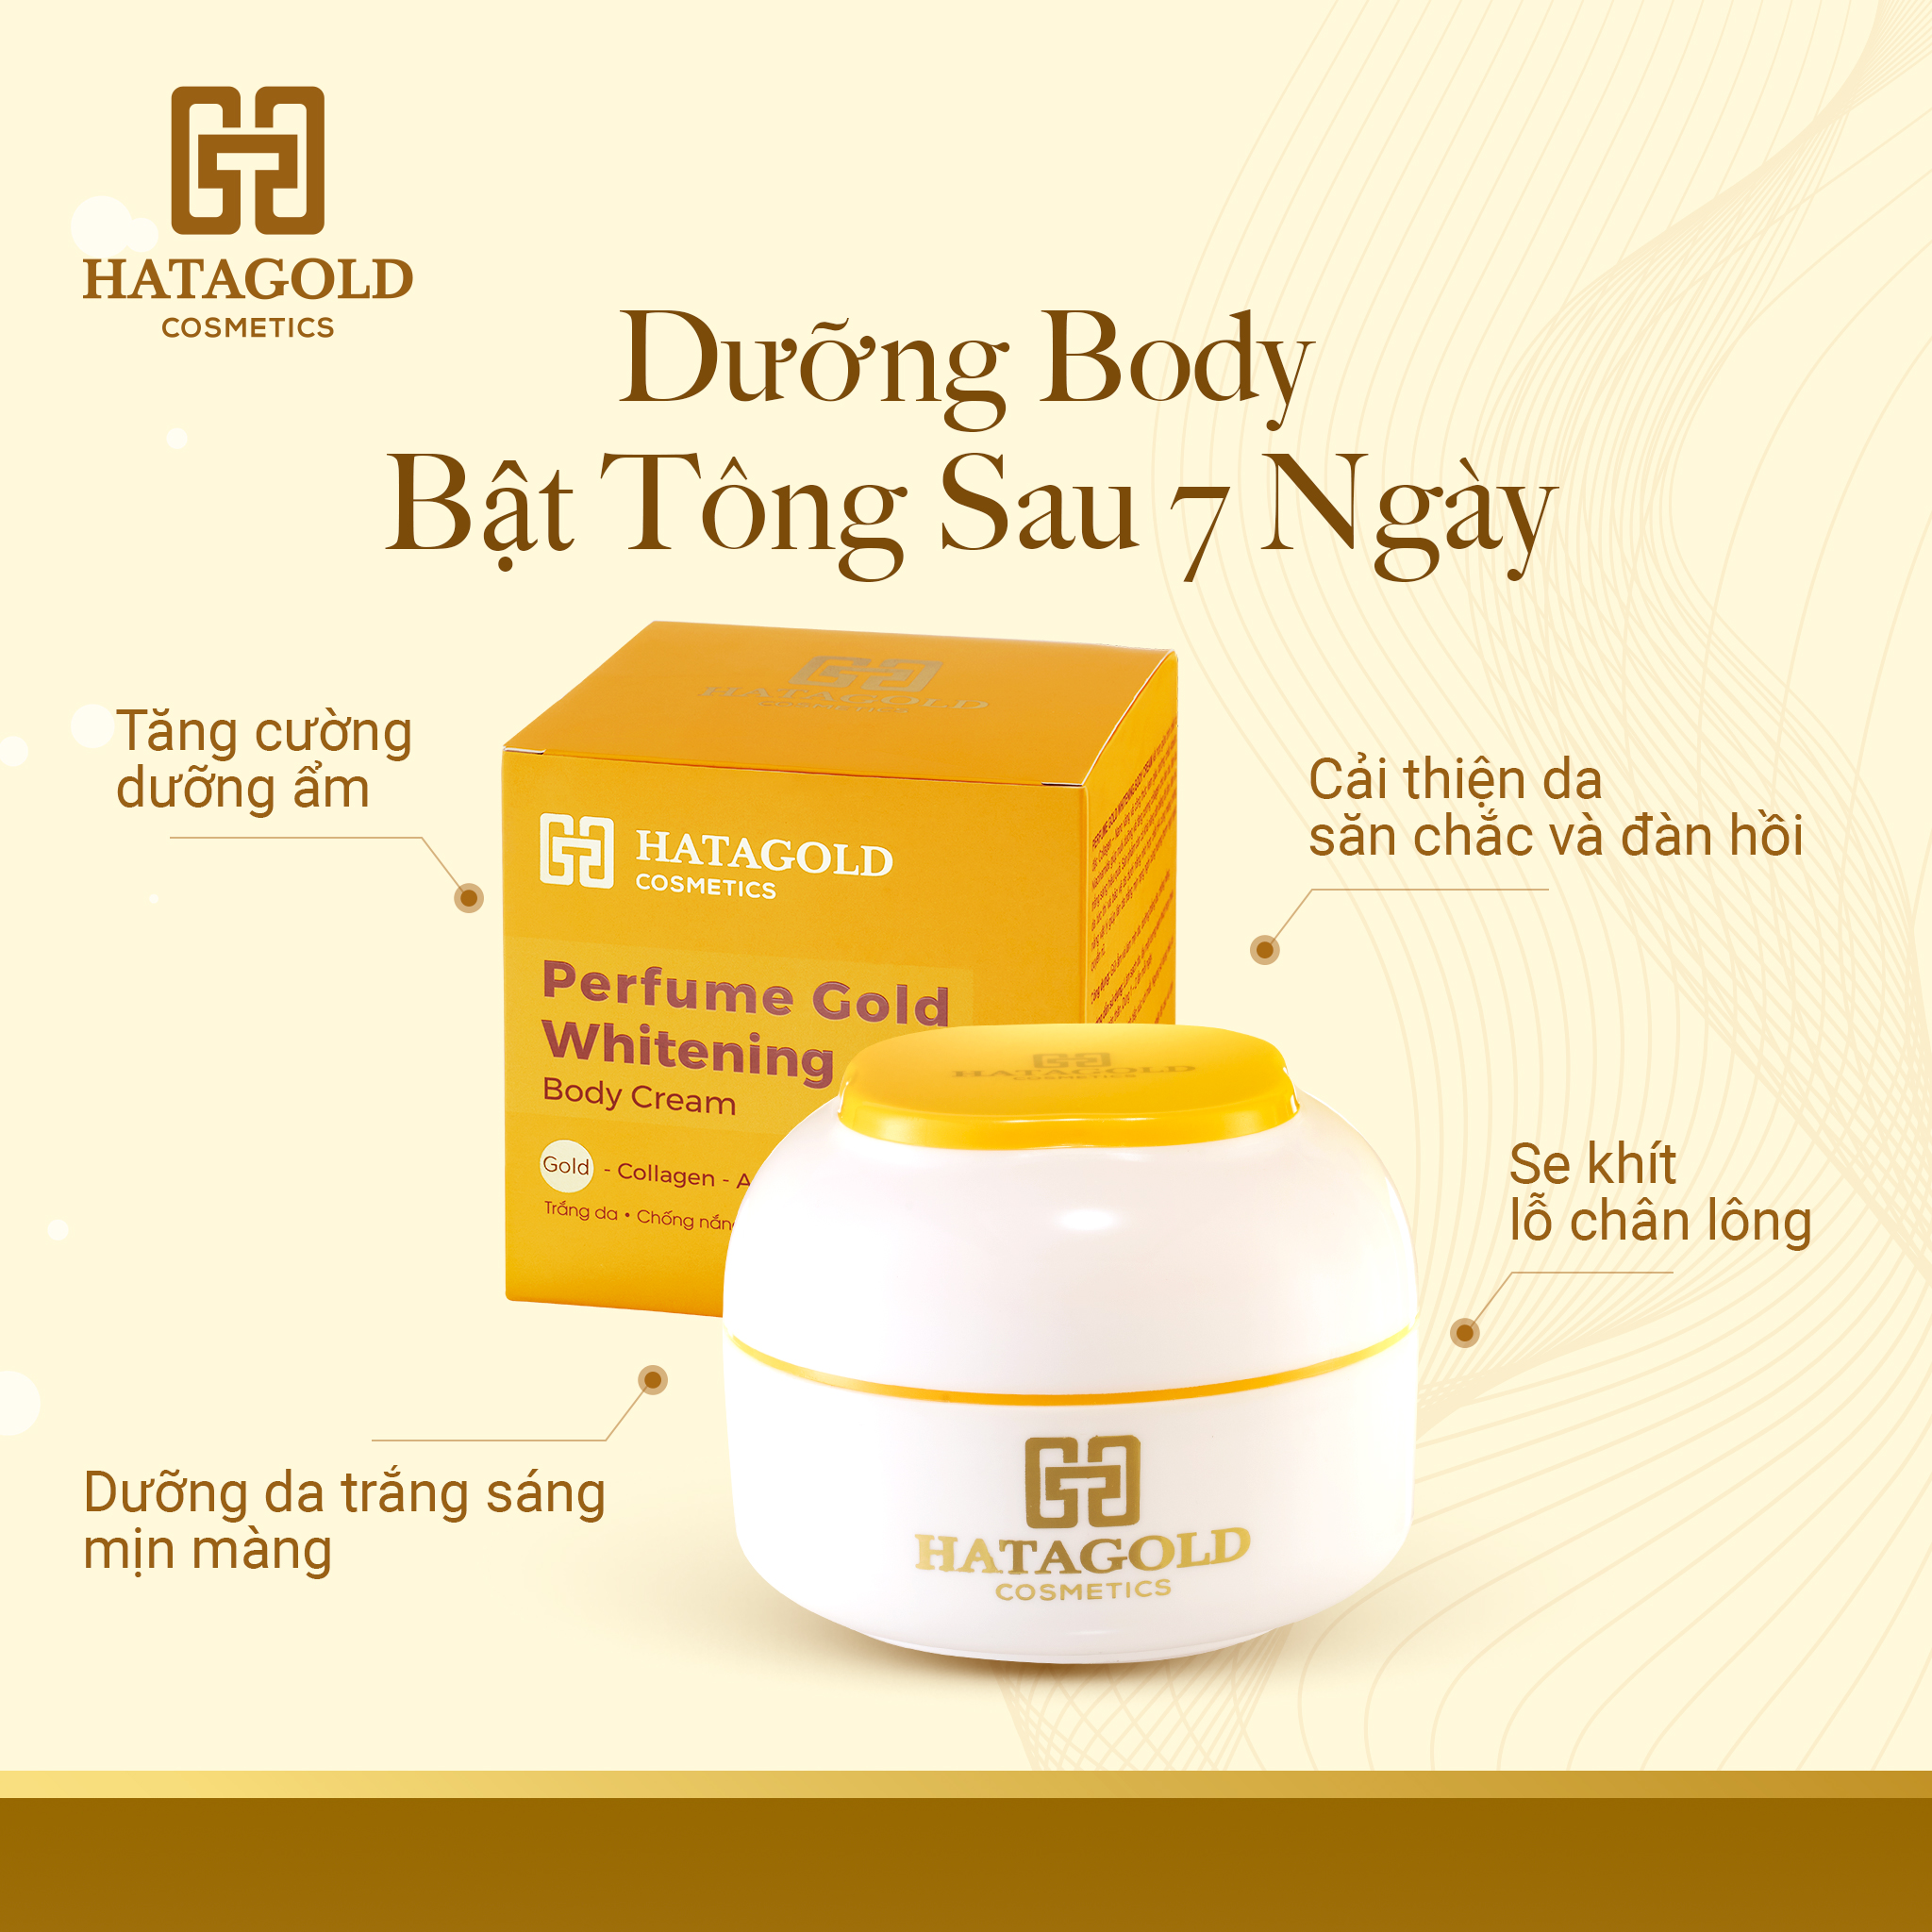 HATAGOLD | Kem Dưỡng Body Bật Tông Sau 7 Ngày - Perfume Gold Whitening Body Cream - KL:250g